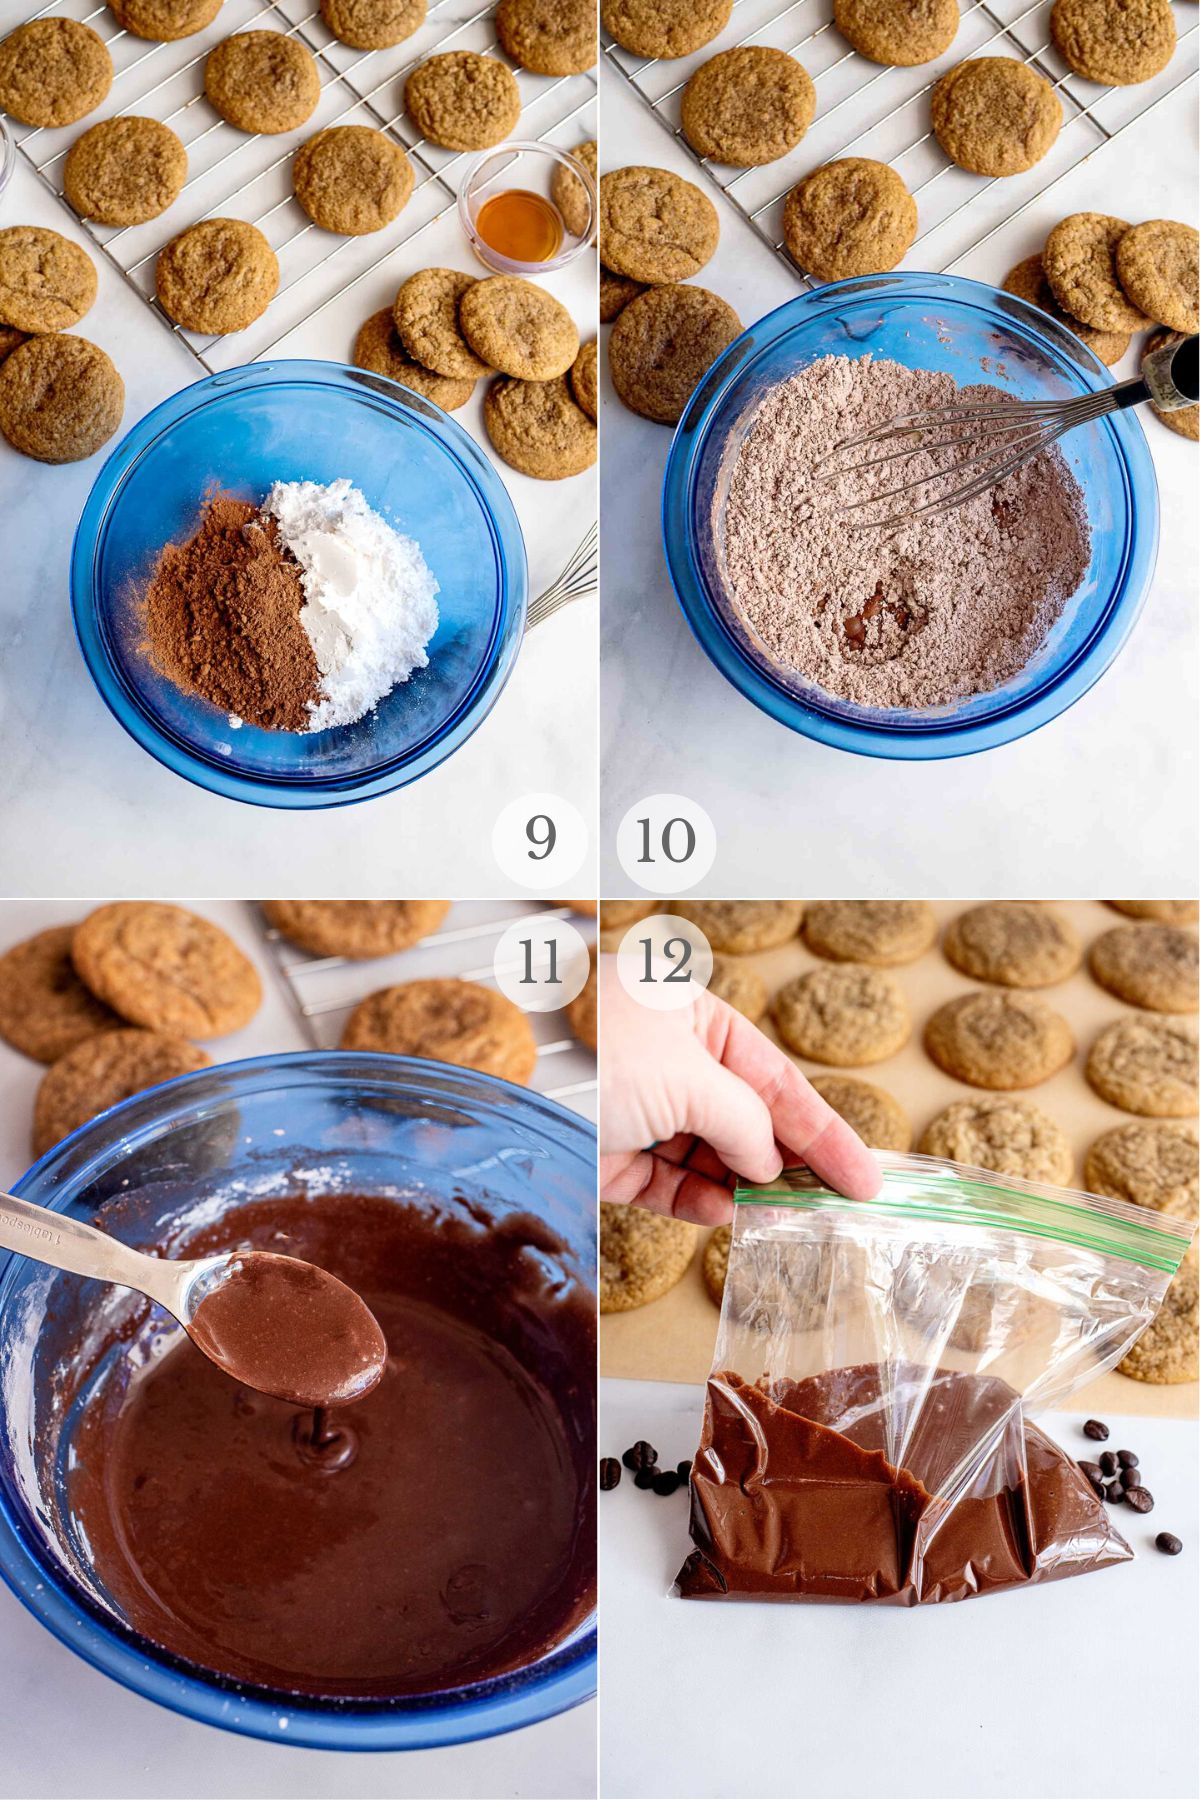 coffee cookies recipe steps 9-12.